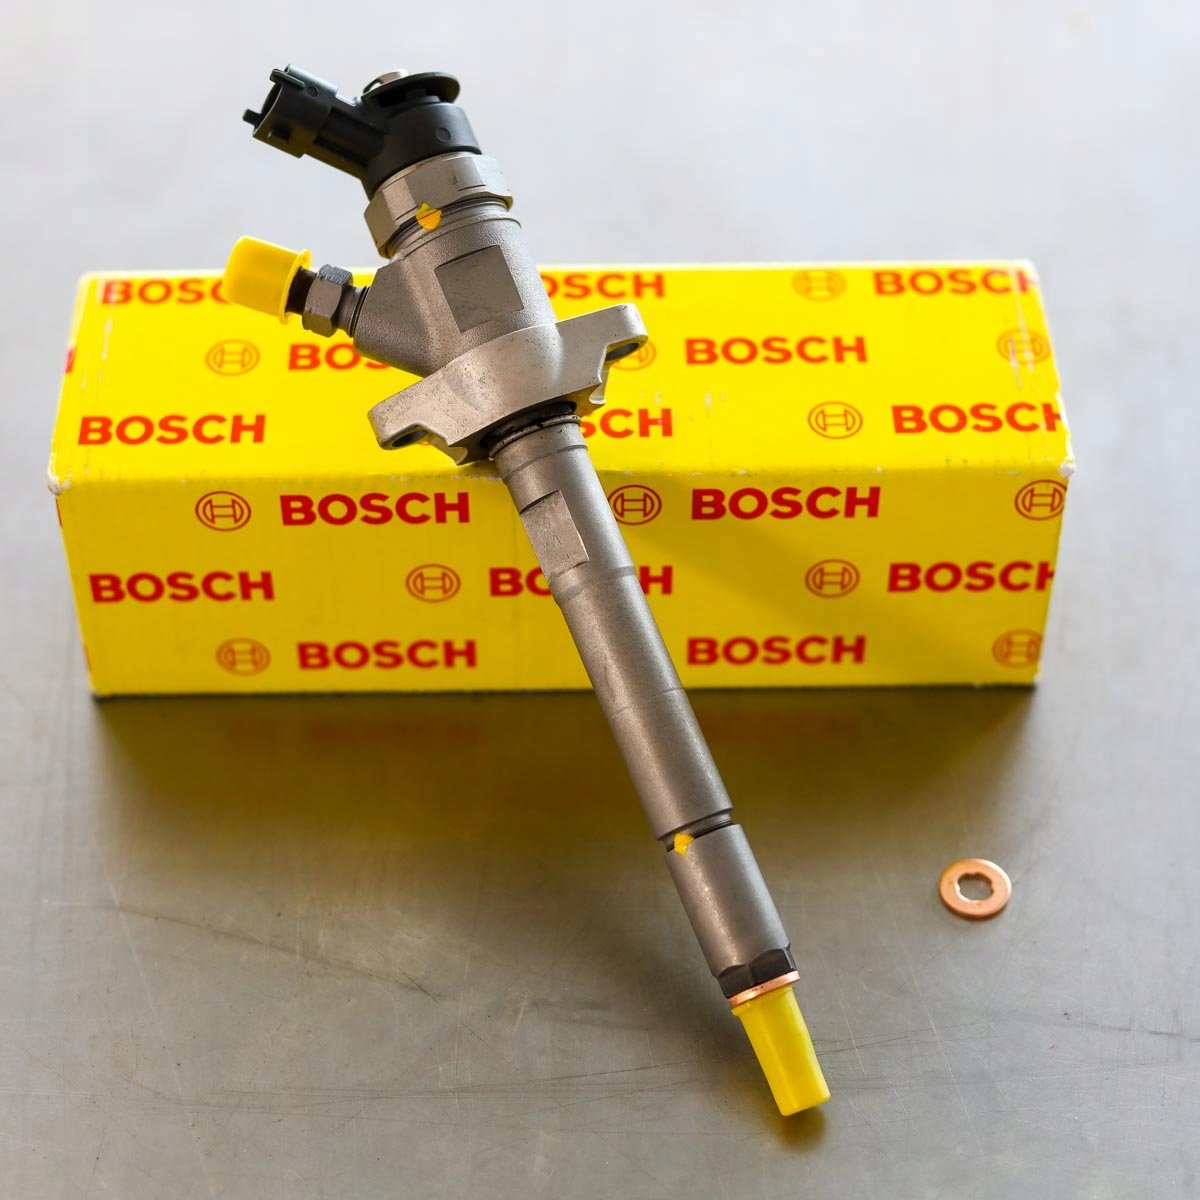 Wtryskiwacz Bosch po naprawie gotowy do wysyłki do zamawiającego na gwarancji na okres 2 lat w dobrej cenie